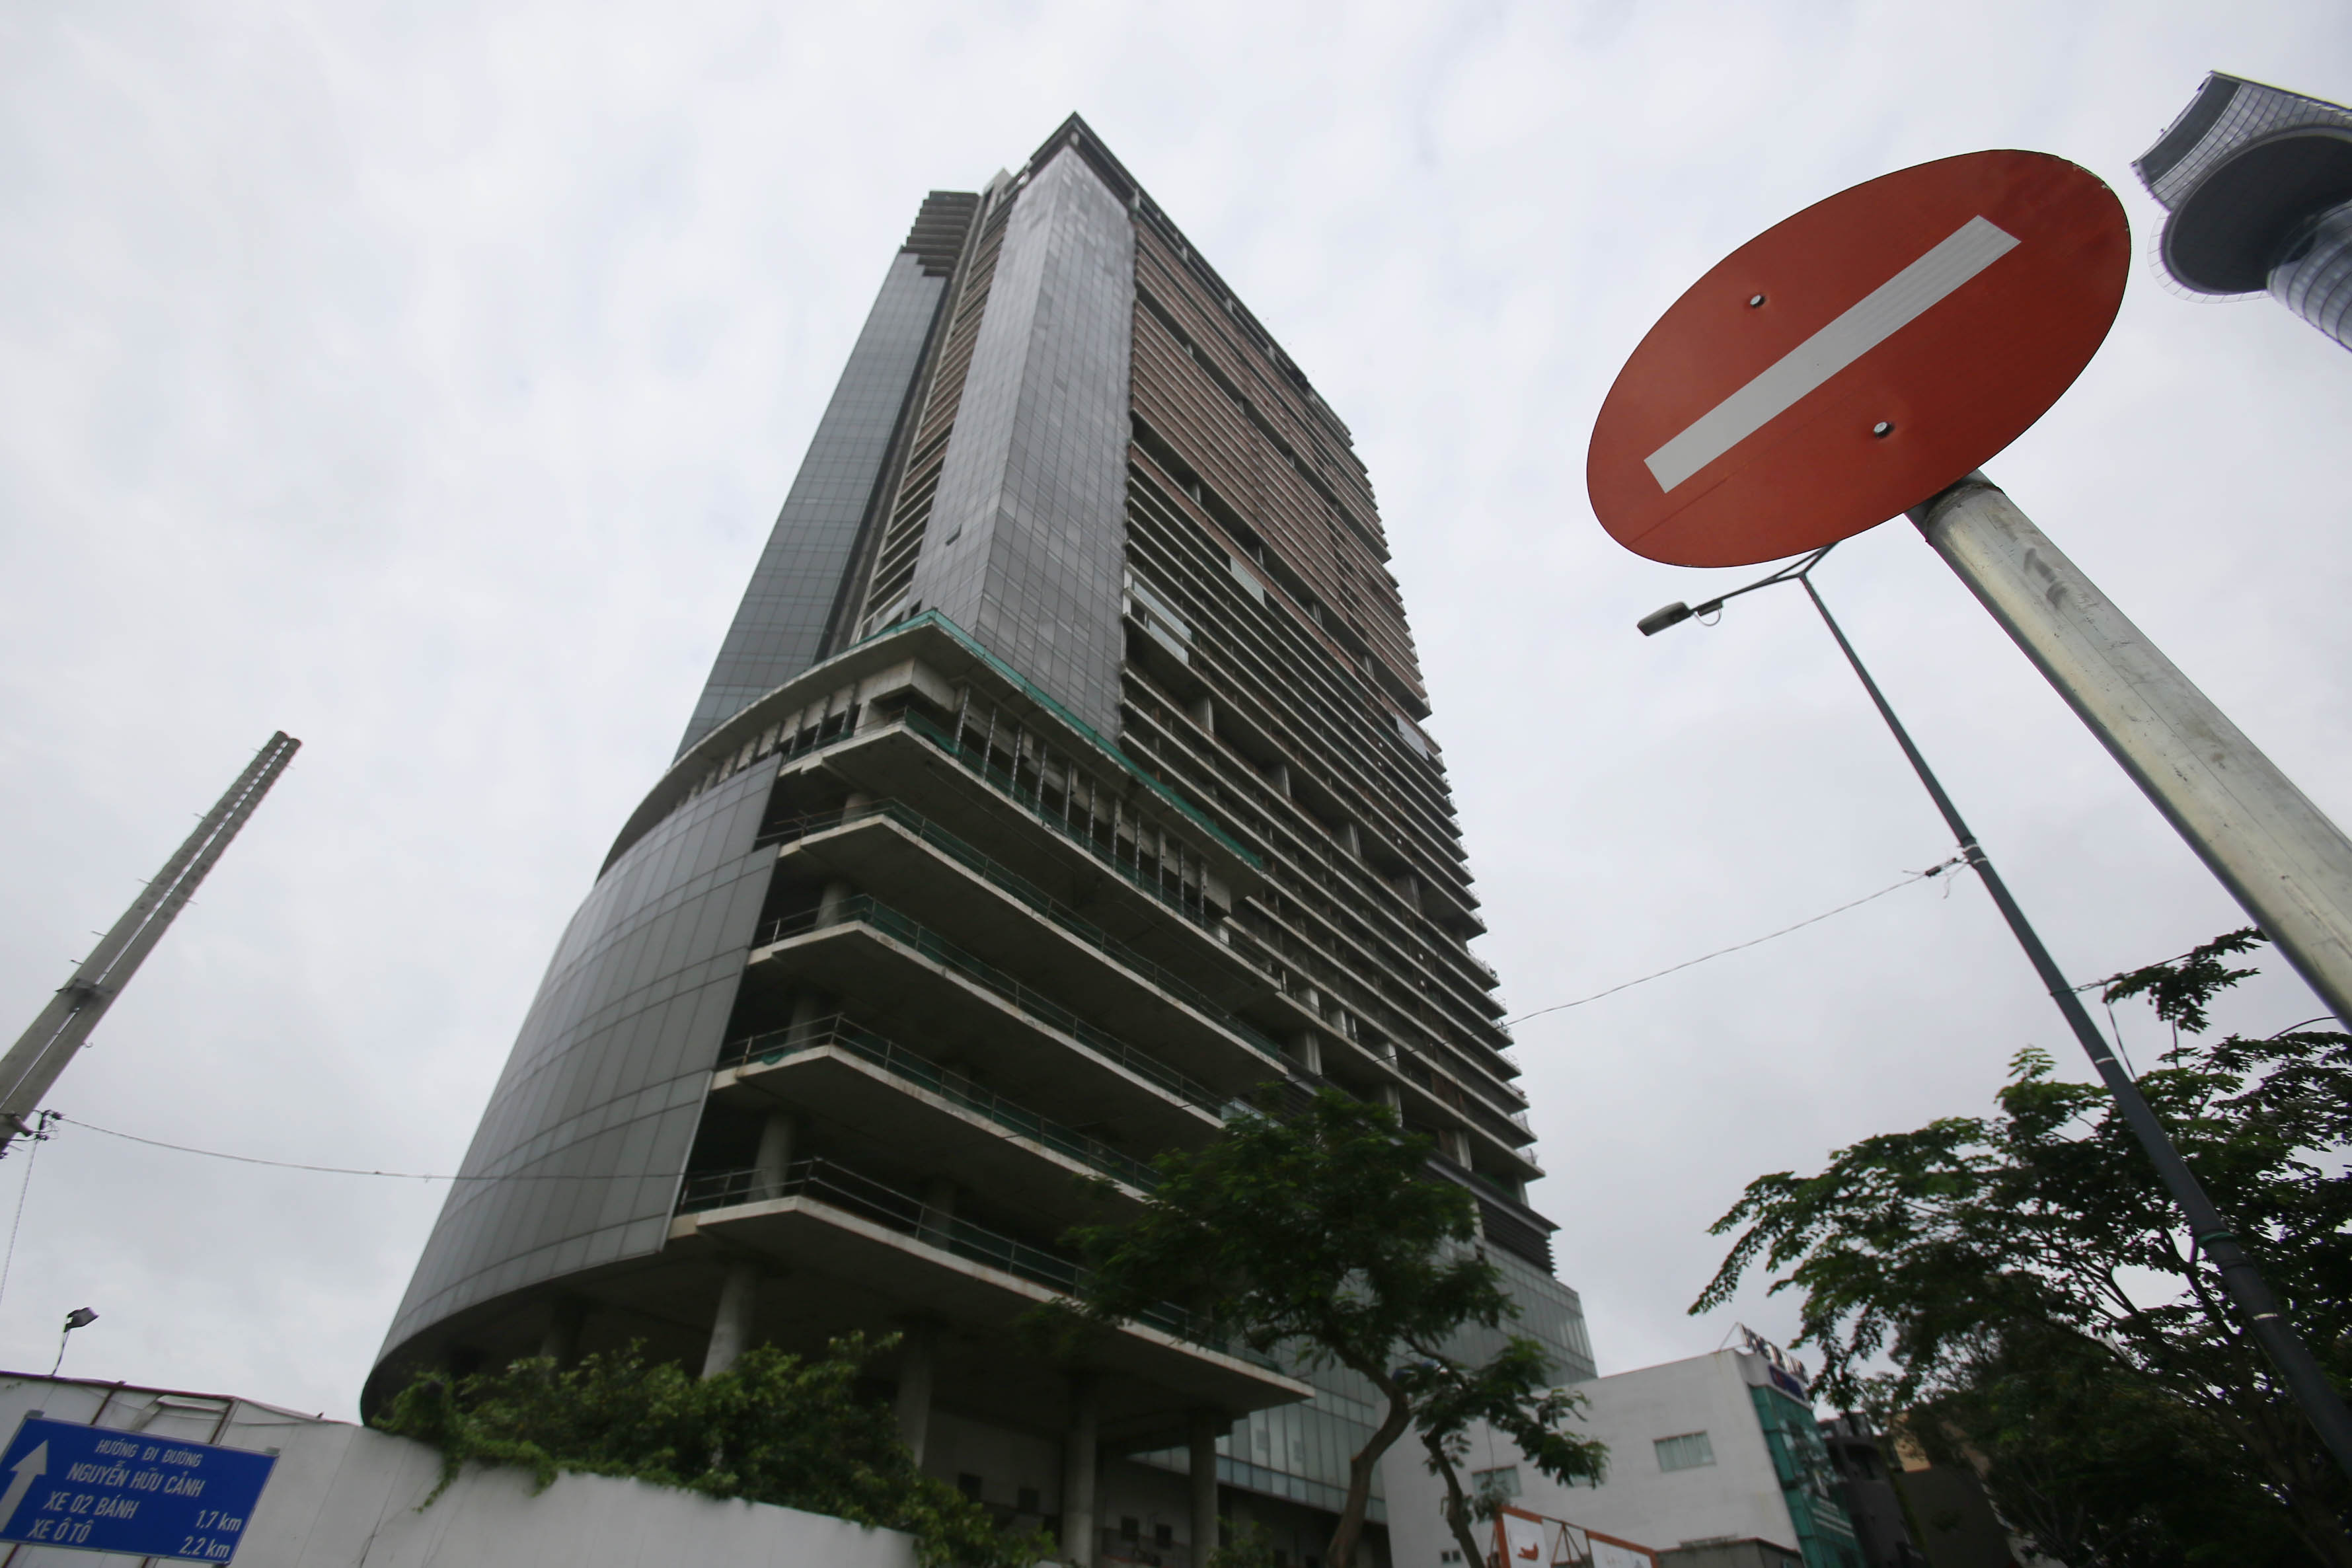 Cận cảnh cao ốc 42 tầng vừa bị xiết nợ ở TP HCM - Ảnh 2.